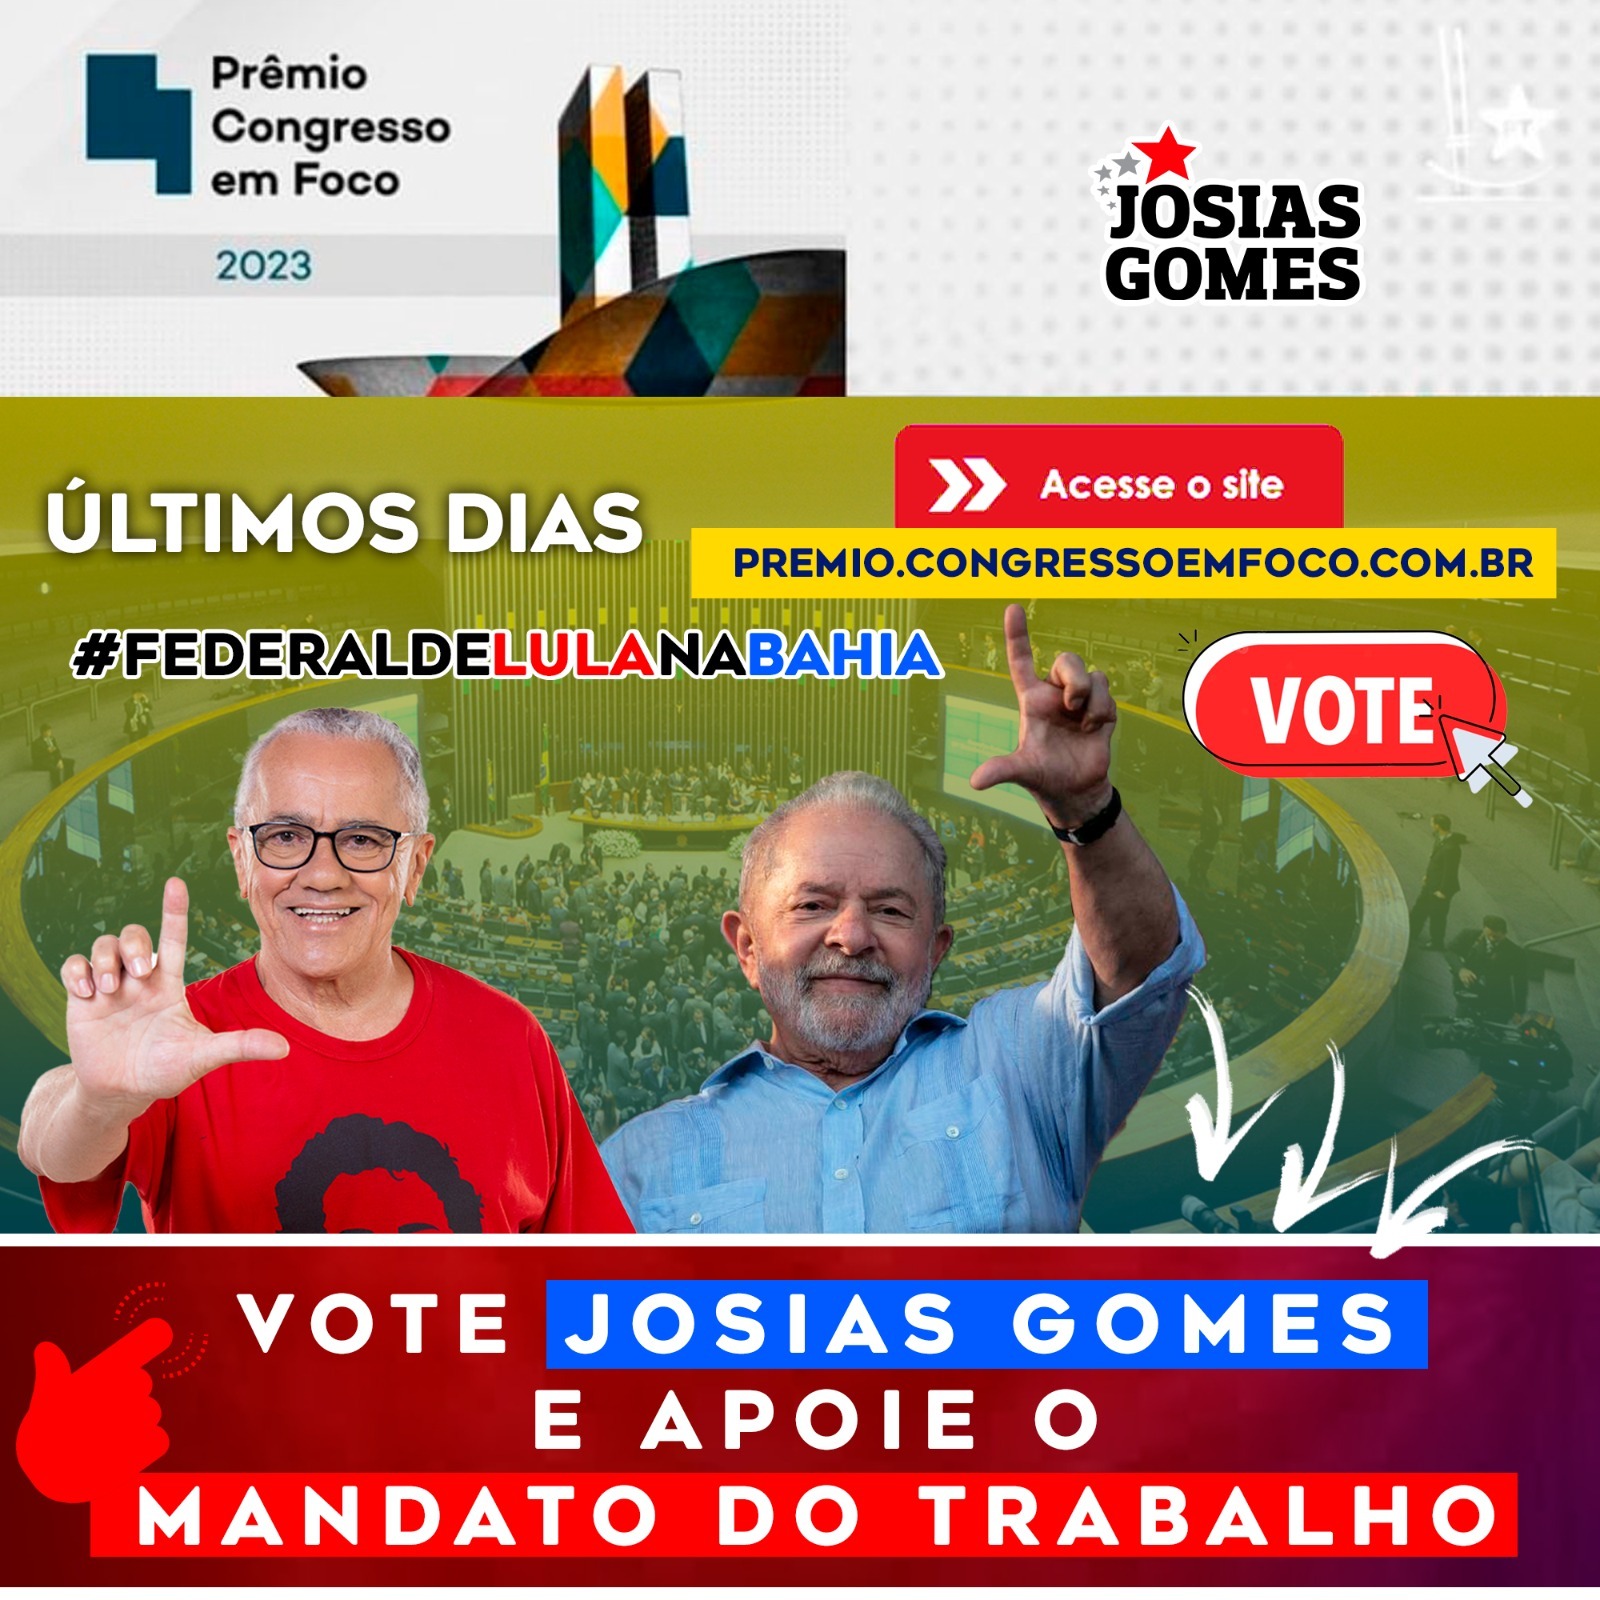 Prêmio Congresso Em Foco 2023: Vote Josias Gomes!